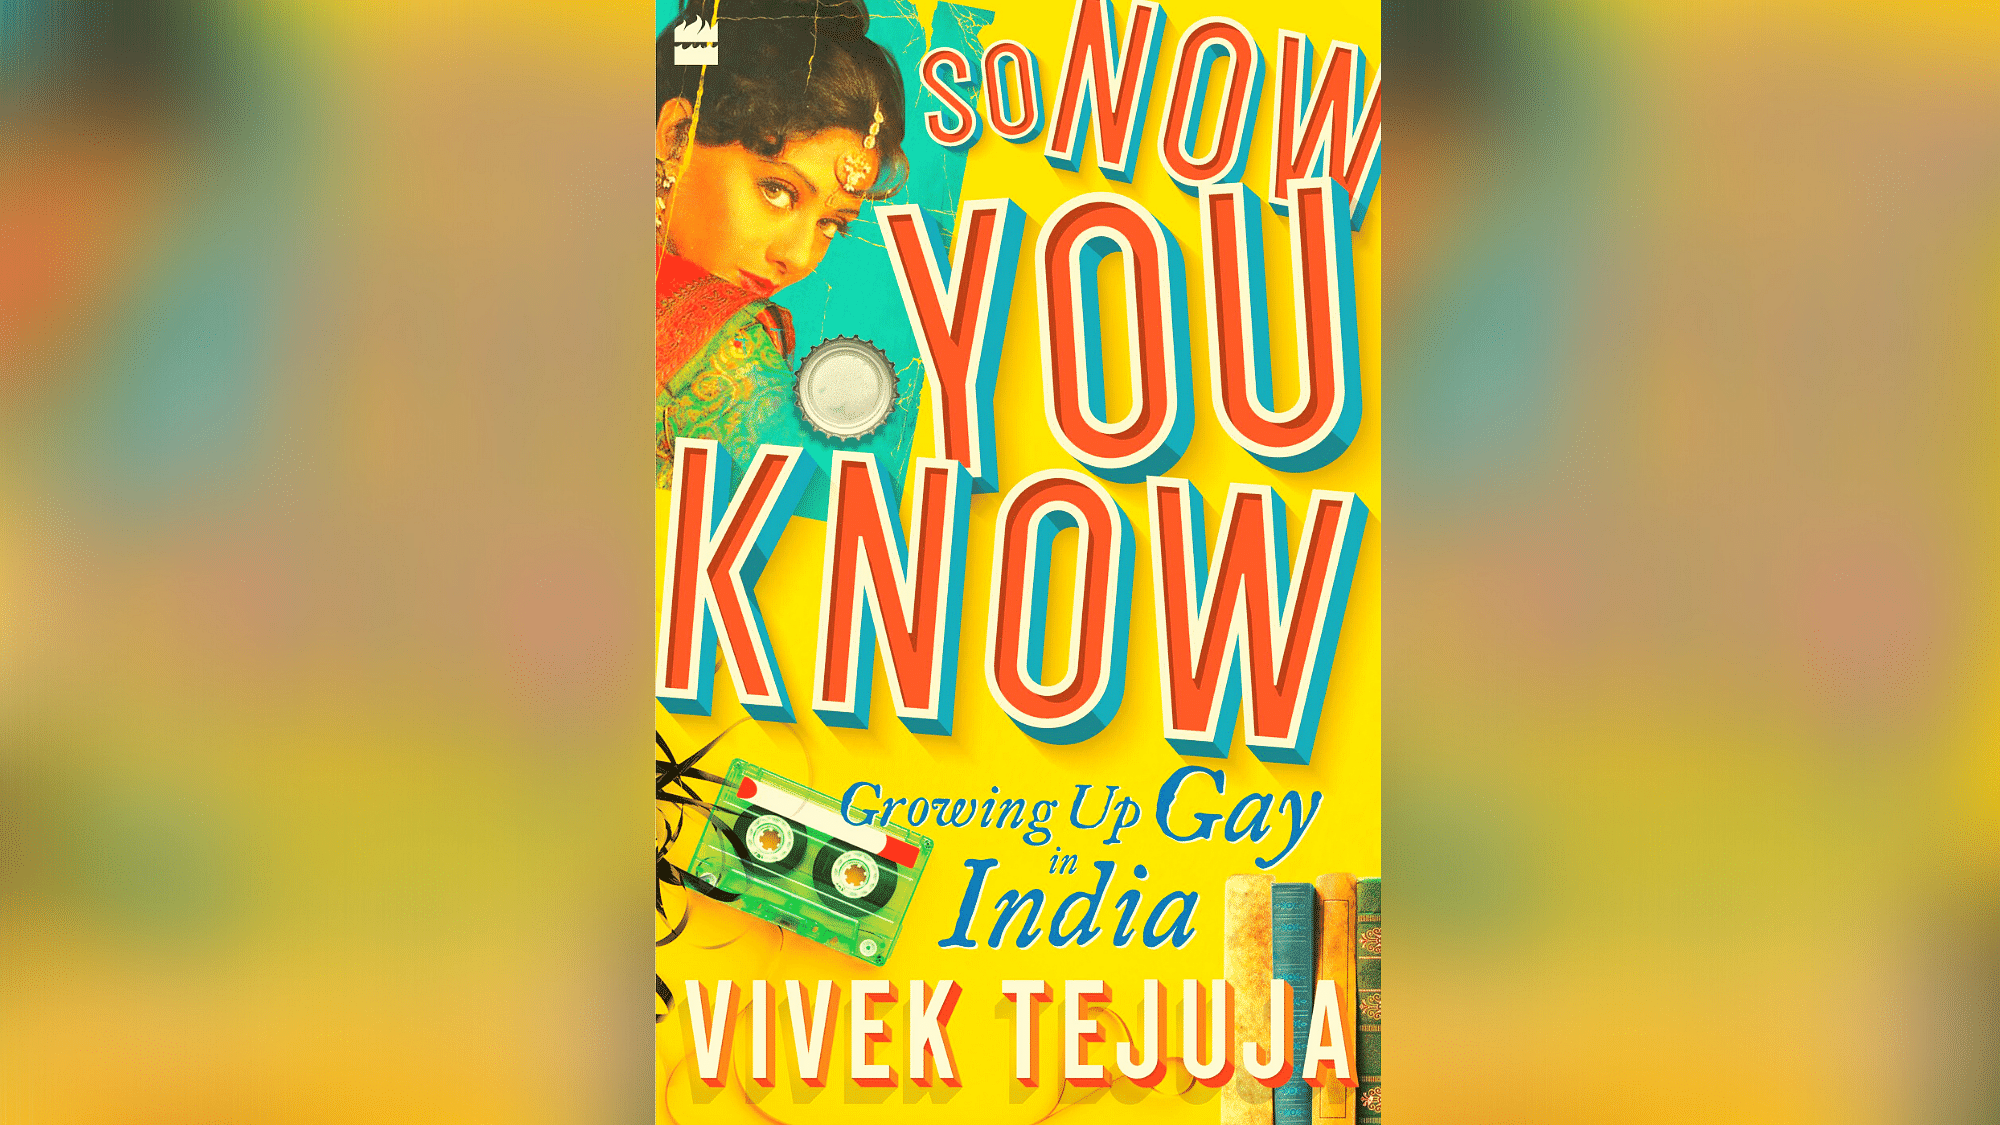 The cover of Vivek Tejuja’s book.